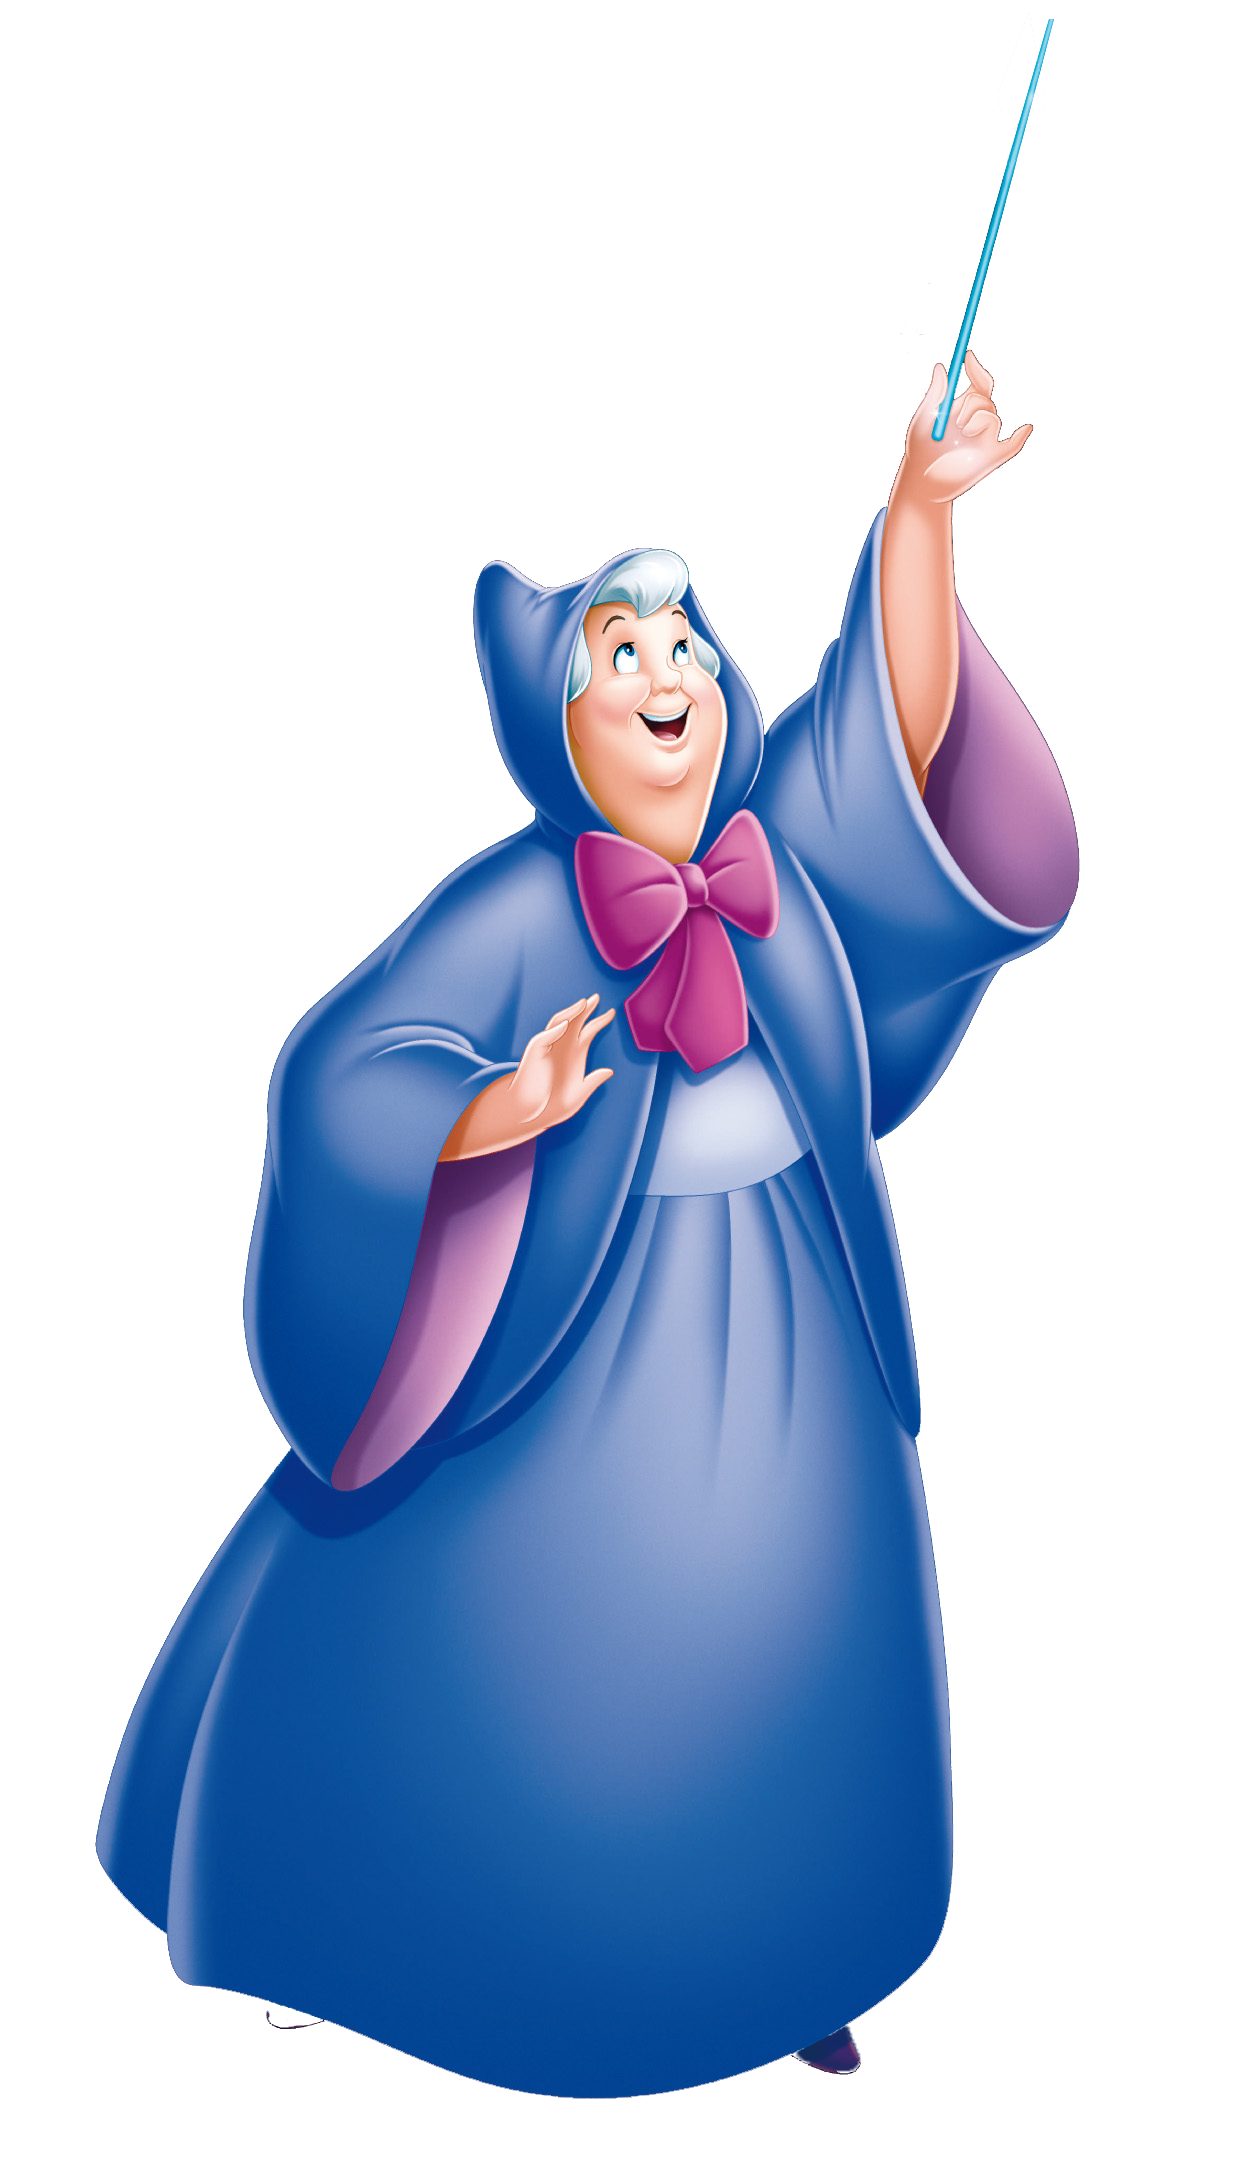 Fairy Godmother | Disney Wiki | Fandom powered by Wikia